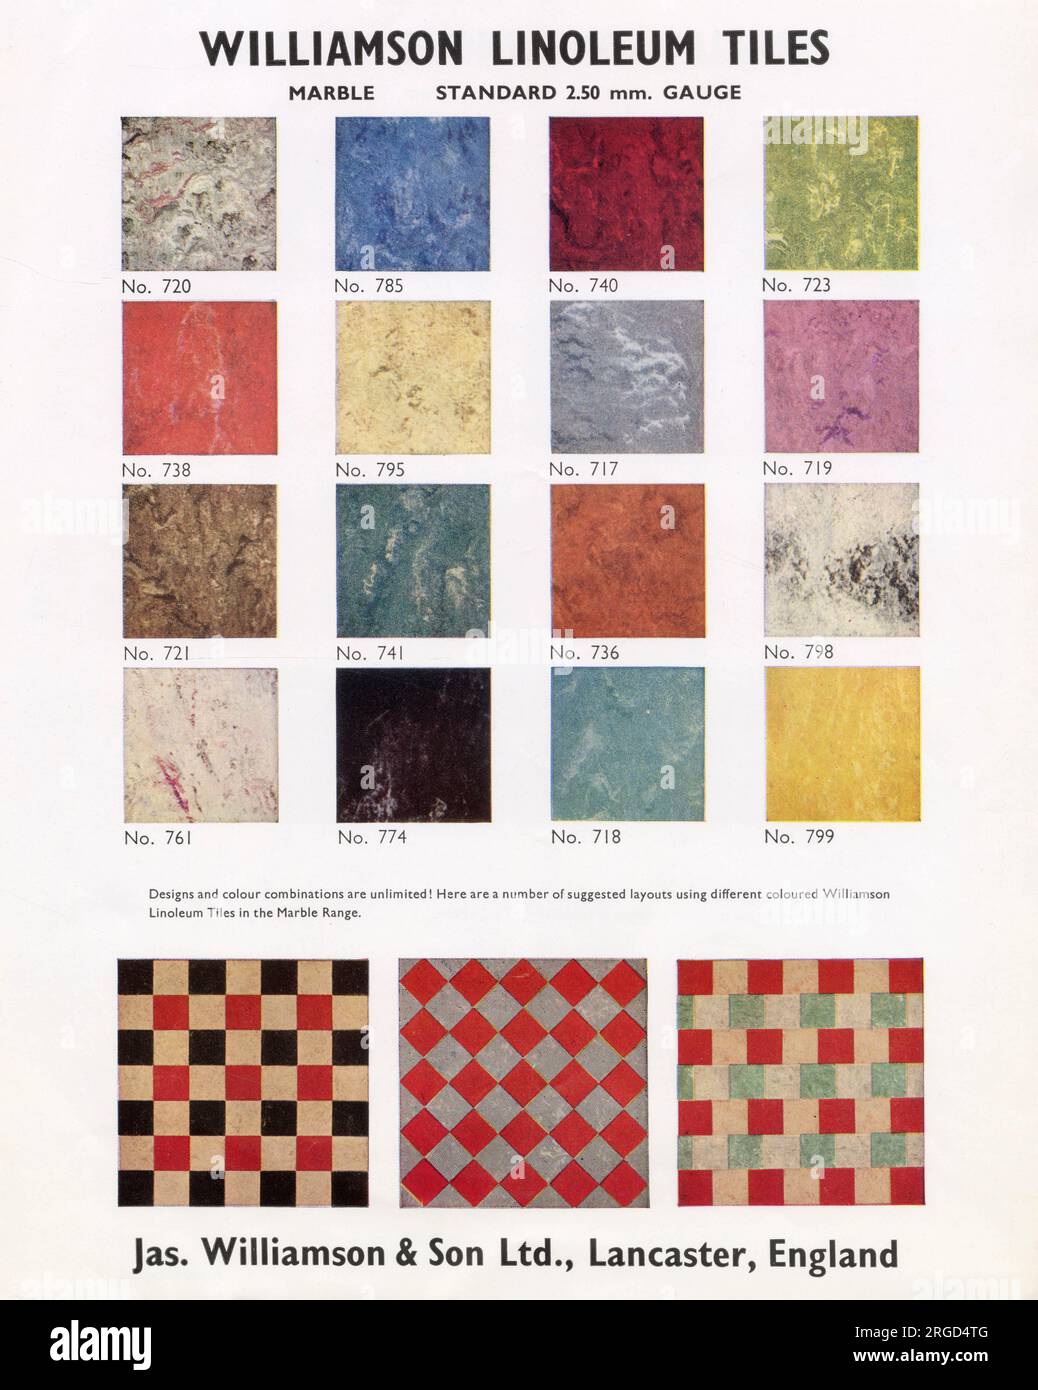 Page de la brochure de vente pour Williamson Linoleum Tiles de James Williamson & son Ltd, de Lancaster, Angleterre. La page montre différents coloris des carreaux lino ainsi que des idées de combinaison de design pour les revêtements de sol. Banque D'Images